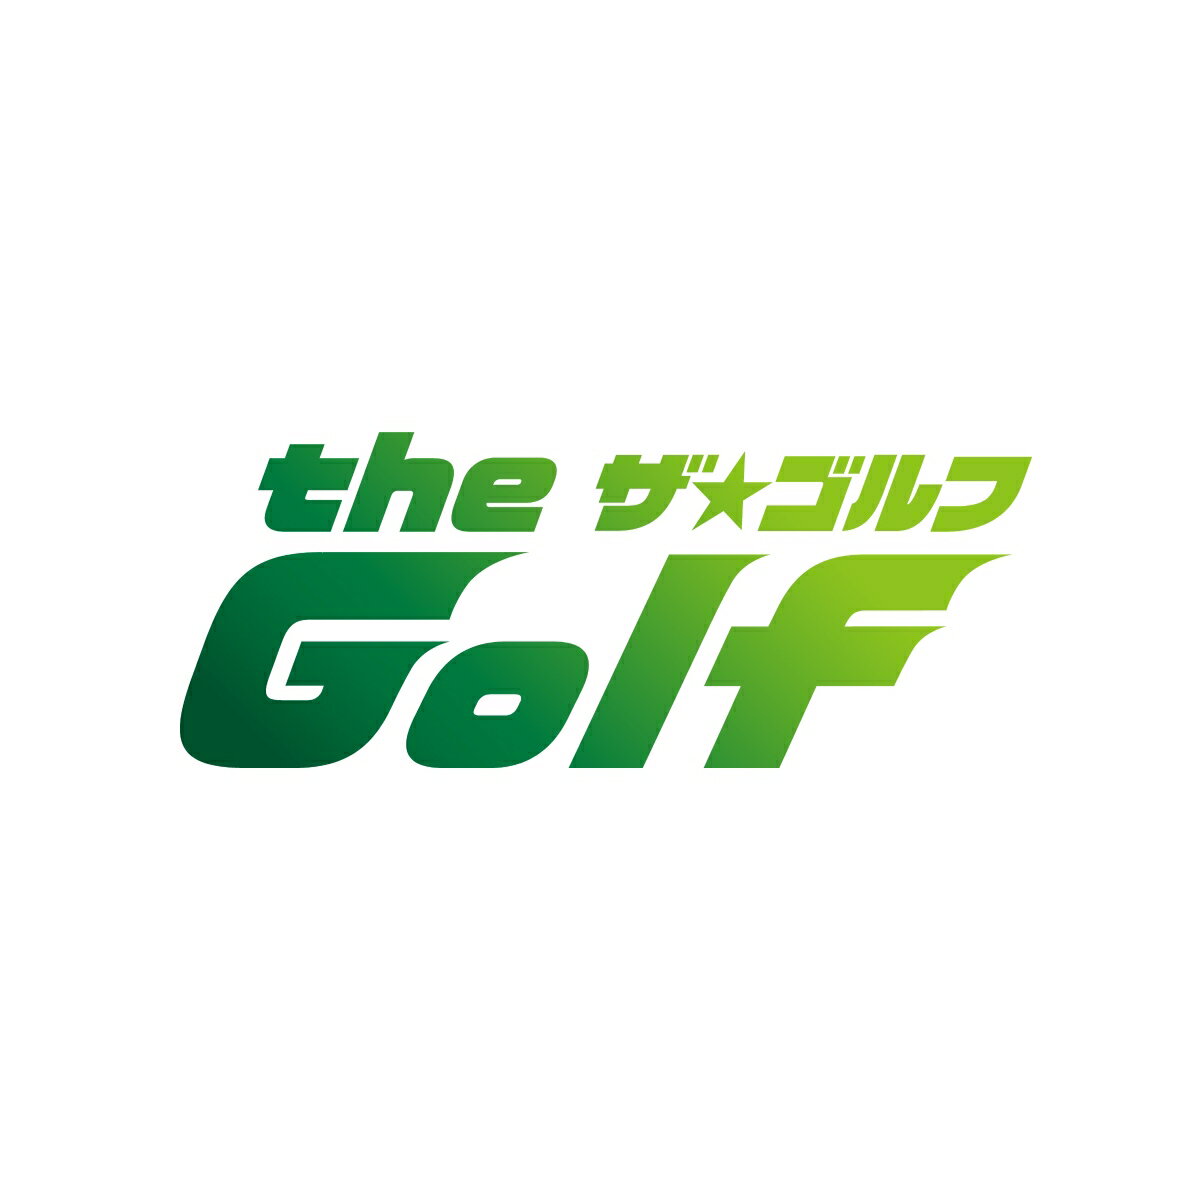 YouTubeチャンネル『MITSUHASHI TV』のチャンネル登録数は20万人超！
三觜喜一プロが番組の監修、指導と全面サポートした”一味違う新しいゴルフ番組” 『the Golf』のDVDがついに発売！

2019年4月から一年間、テレビ神奈川で放送された『theGolf』。
出演は多くのアマチュアゴルファーの支持を得ている三觜喜一プロとストイックに鍛えられた体が女性ファンにも多くの指示を得ている竹内渉。
ゴルフ初心者の渉ちゃんを通して「細かすぎるゴルフレッスン」コーナーと、視聴者の勘違いをズバリと指摘し、指南する「あぁ勘違い」コーナーの2本柱の構成。
「細かすぎるゴルフ情報」コーナーでは、毎回1つのテーマについて深く掘り下げ、ゴルフの技術だけでなく、用具選びについてなど、ゴルフについて一からお伝えします。
「あぁ勘違い」のコーナーでは、番組に実際に寄せられたゴルファーなら誰でも直面する疑問に三觜プロがズバリとお答えする視聴者参加型コーナー。
ゴルフ上達を目指している方だけでなく、
これからゴルフを始めたいと考えている方にも必見の内容です！

＜収録内容＞
【Disc】：DVD1枚組
・画面サイズ：16:9LB
・音声：ドルビーデジタル2.0chステレオ

【vol.3】ゴルフ実践編
＃26　ランニングアプローチ
＃27　ピッチエンドラン
＃28　ロブショット
＃29　バンカー1
＃30　バンカー2
＃31　パター
＃32　パター2
＃33　ラウンドレッスン　1番パーフォー
＃34　ラウンドレッスン　2番パースリー
＃35　ラウンドレッスン　3番パーファイブ
＃36　ラウンドレッスン　4番パーフォー
＃37　ラウンドレッスン　5番パーフォー
＃38　ラウンドレッスン　6番パースリー

※各巻のタイトル、内容は一部変更となる可能性があります。

＜キャスト＞
三觜喜一プロ
竹内渉
常盤仁（トレーナー）
鈴木真一プロ 

【三觜喜一 プロフィール】
1974年12月29日神奈川県藤沢市生まれ。東京ゴルフ専門学校卒。PGAティーチングプロA級。
1999年よりジュニアゴルファーの指導を中心に活動、独自の練習ドリルが「わかりやすく実戦的」と高い評価を得る。
You Tube「三觜喜一MITSUHASHI TV」が大きな人気を呼んでいる。

＜スタッフ＞
ナレーター：赤井 祐紀
音楽：グローブエンターブレインズ
　　　大友 民男　村井 大　島 翔太朗　安岡 洋一郎
撮影：佐藤 大輔
音声：石井 満里子
MA： 劉 宗隆（DreamSound）
美術：高津 まさき
ヘアメイク：清水 玲歌
編成：近藤 和之
営業：福原 直樹　増田 裕介
協力：クラウンゴルフクラブ
　　　修善寺カントリークラブ
ブレーン：永田 守
AD：柳澤 樹
ディレクター：田中 慎二　浅尾 就一（アップセット）　宜保 博也（アップセット）
DVDプロデューサー：河口 芳佳　木村 麻里恵
プロデュース：幡山 教道　　金子 奈津子
総合プロデュース：重富 浩二

&copy;tvk

※収録内容は変更となる場合がございます。